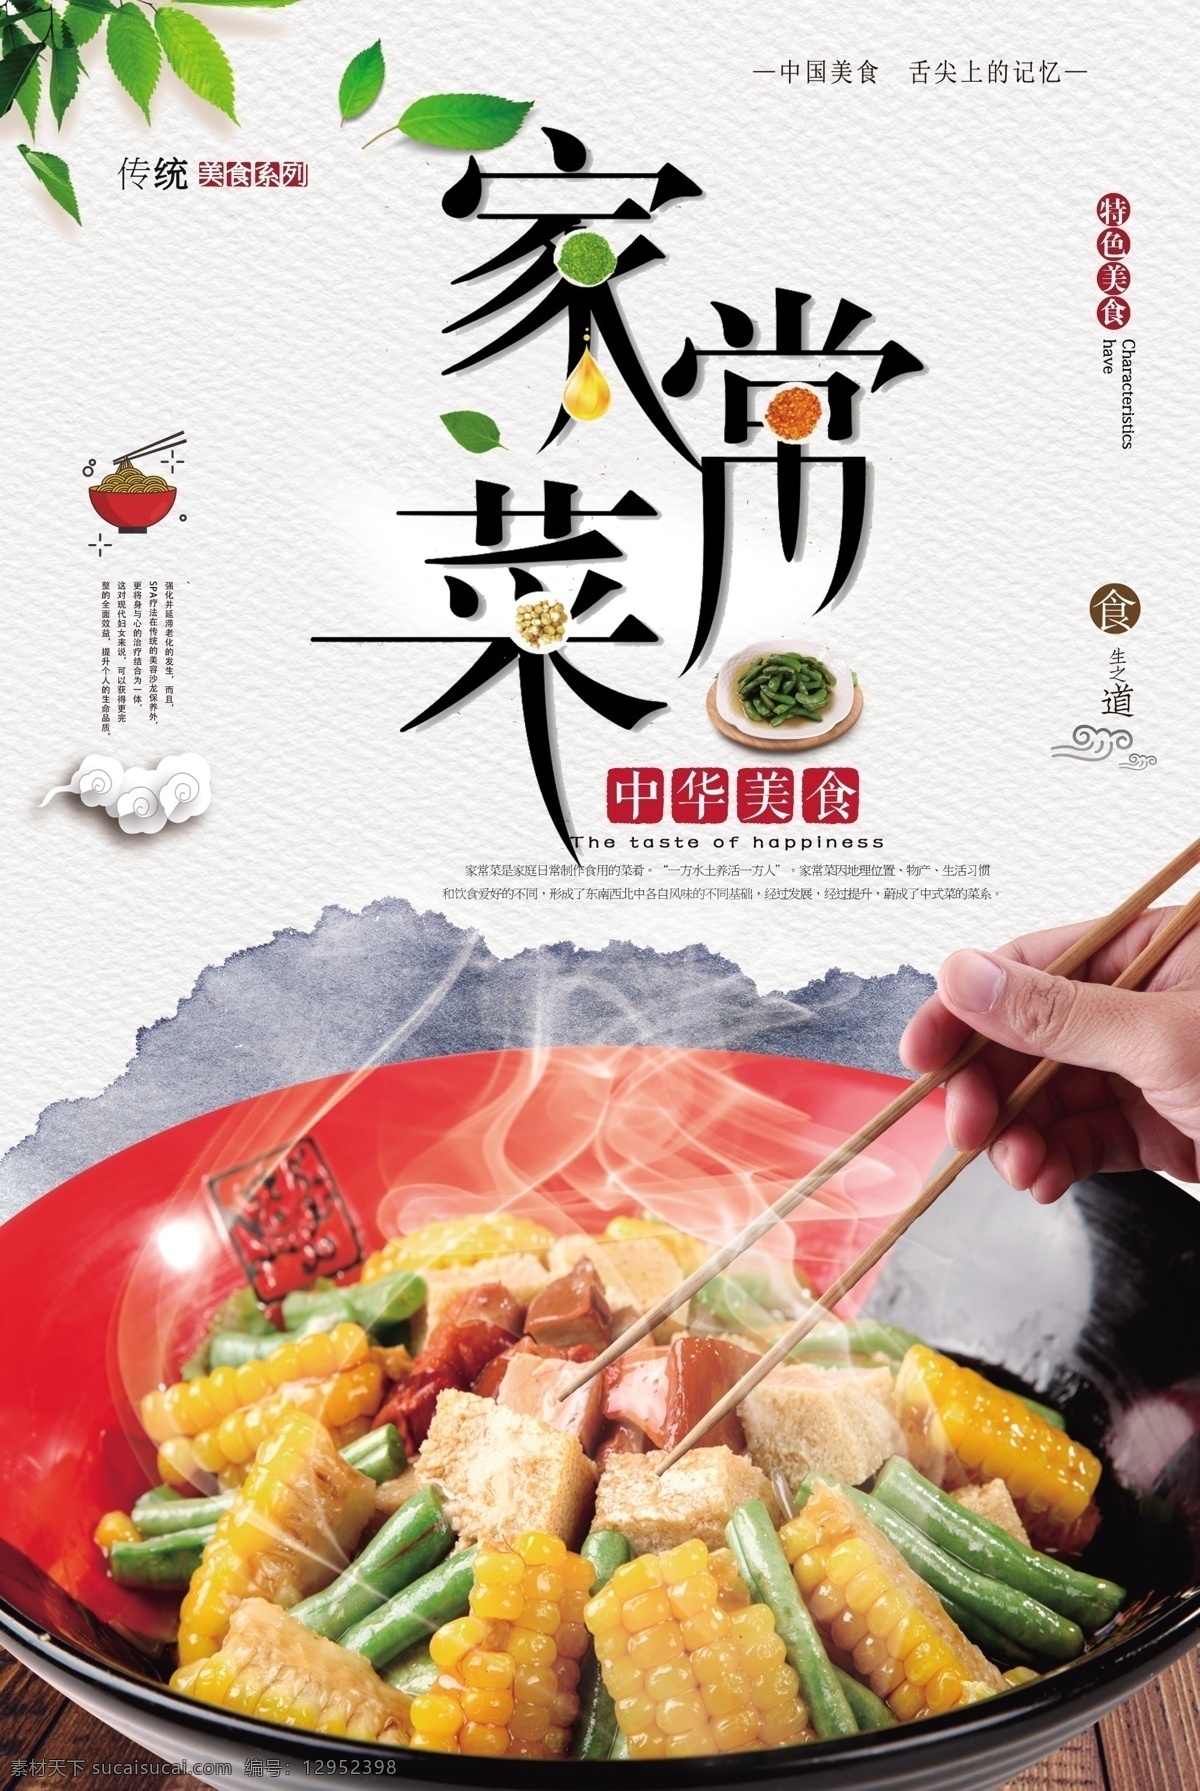 大气 家常菜 美食 海报 美食元素 中国风 调味 家常菜海报 免费模版 大气psd